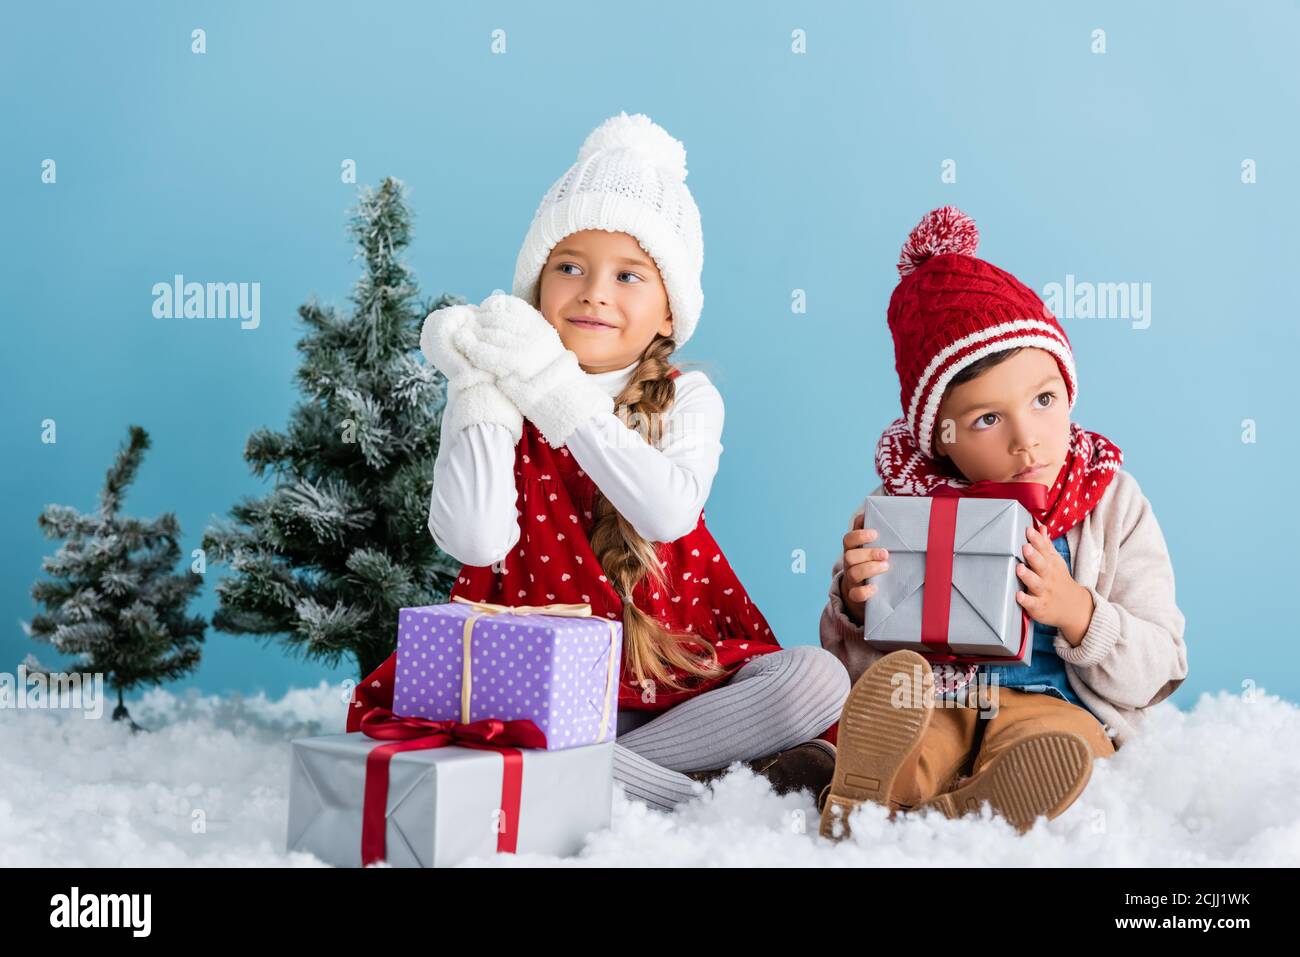 Kinder im Winter Outfit sitzen auf Schnee in der Nähe von Tannen und Präsentiert isoliert auf blau Stockfoto